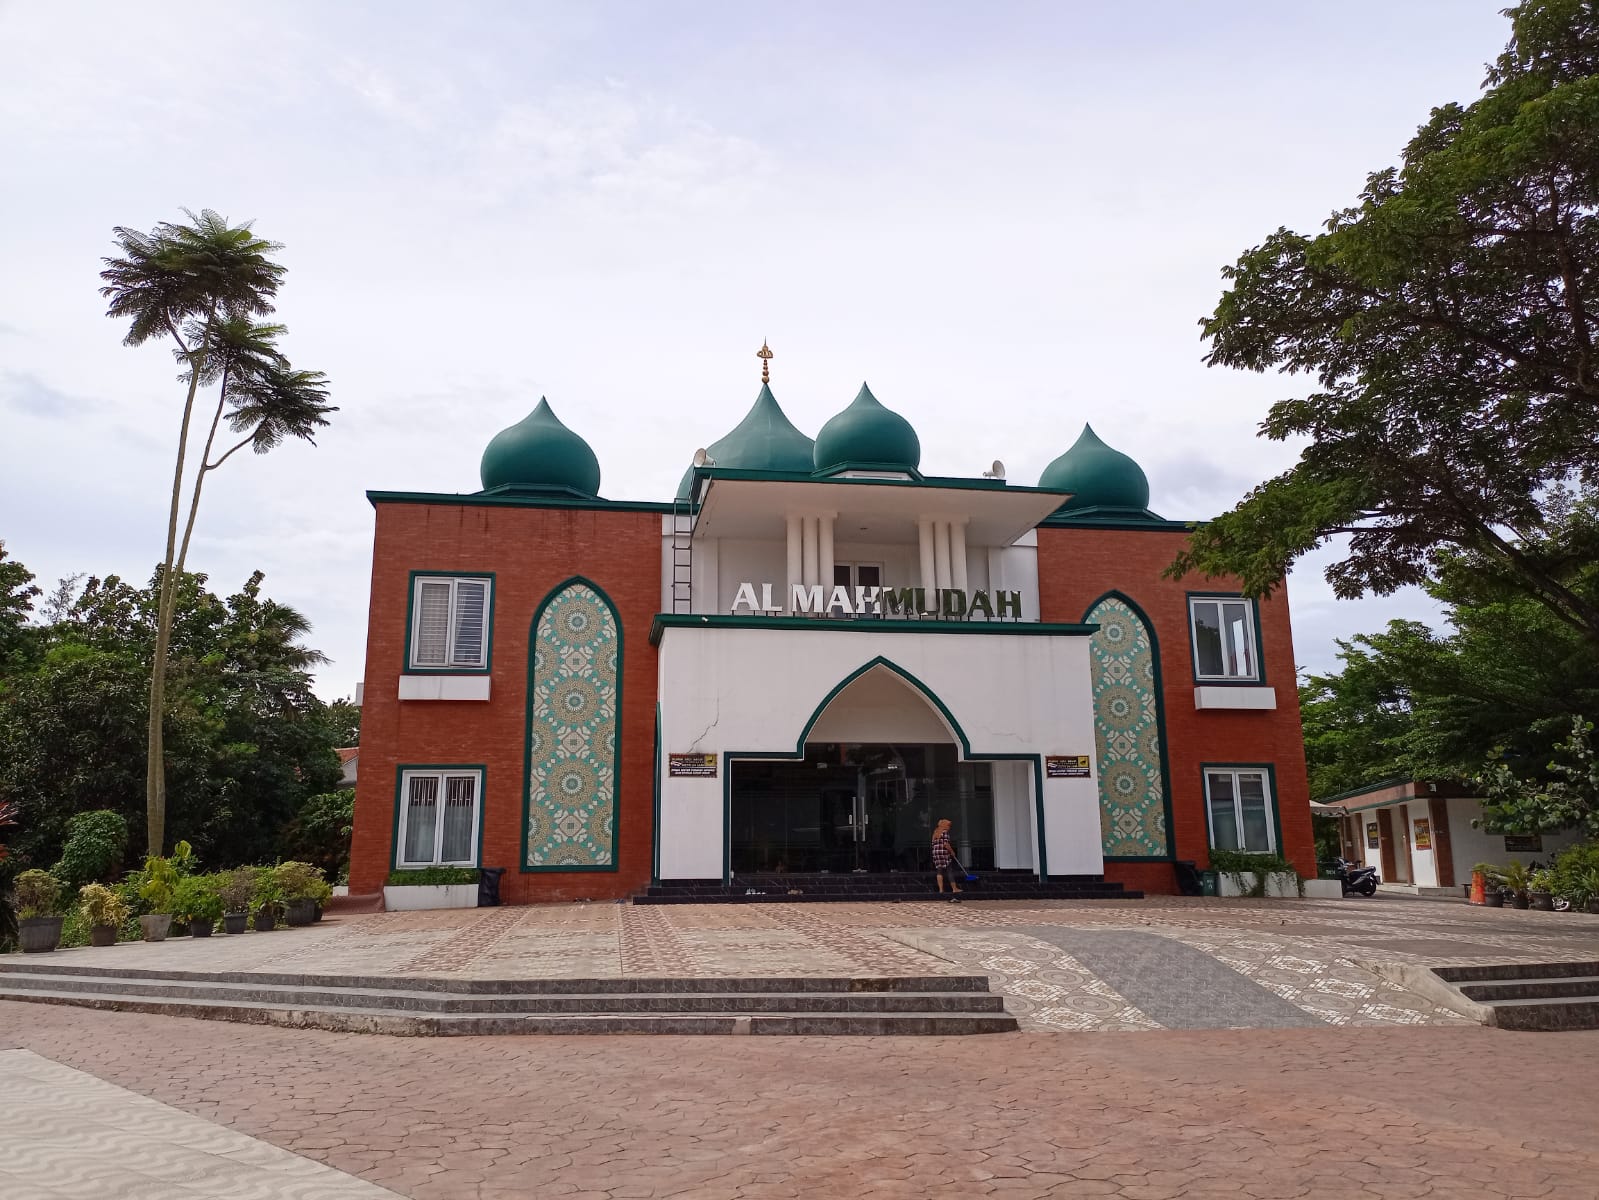 Al Mahmudah Manasik Training Center (AMTC) merupakan salah satu masjid yang terdapat tempat untuk latihan manasik haji dan umrah yang berlokasi di Lubana Sengkol, Kecamatan Setu, Tangerang Selatan.